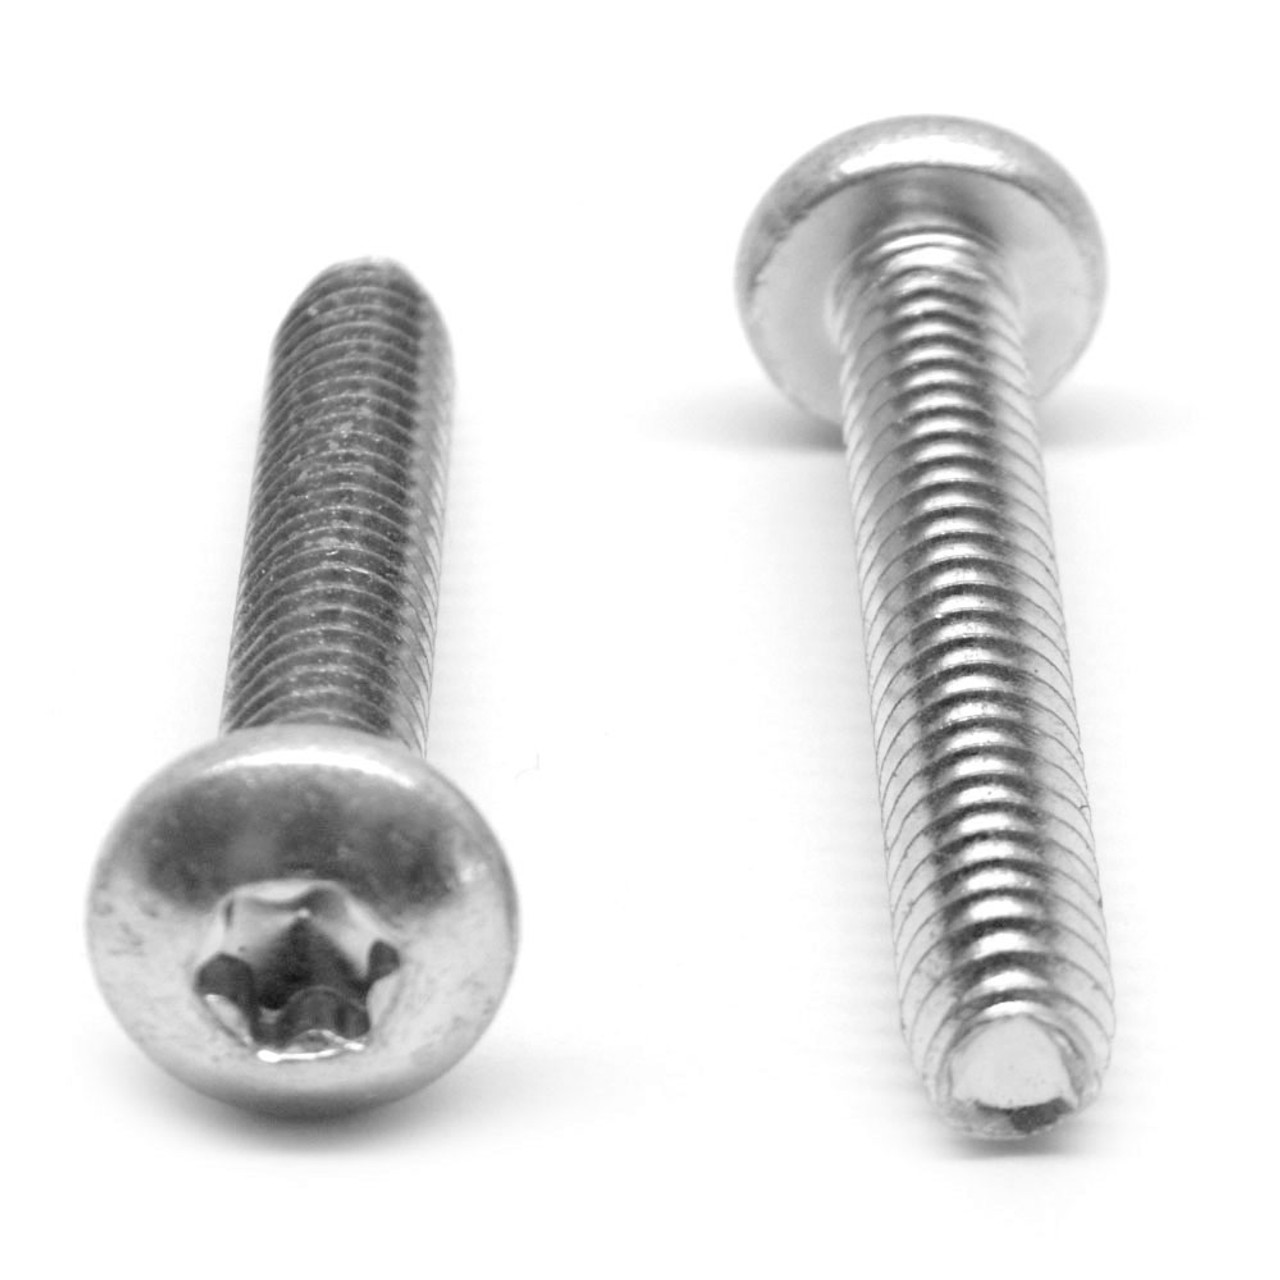 M3 x 0.50 x 6 MM Coarse Thread Thread Rolling Screw 6 Lobe Pan Head Stainless Steel 18-8 Wax